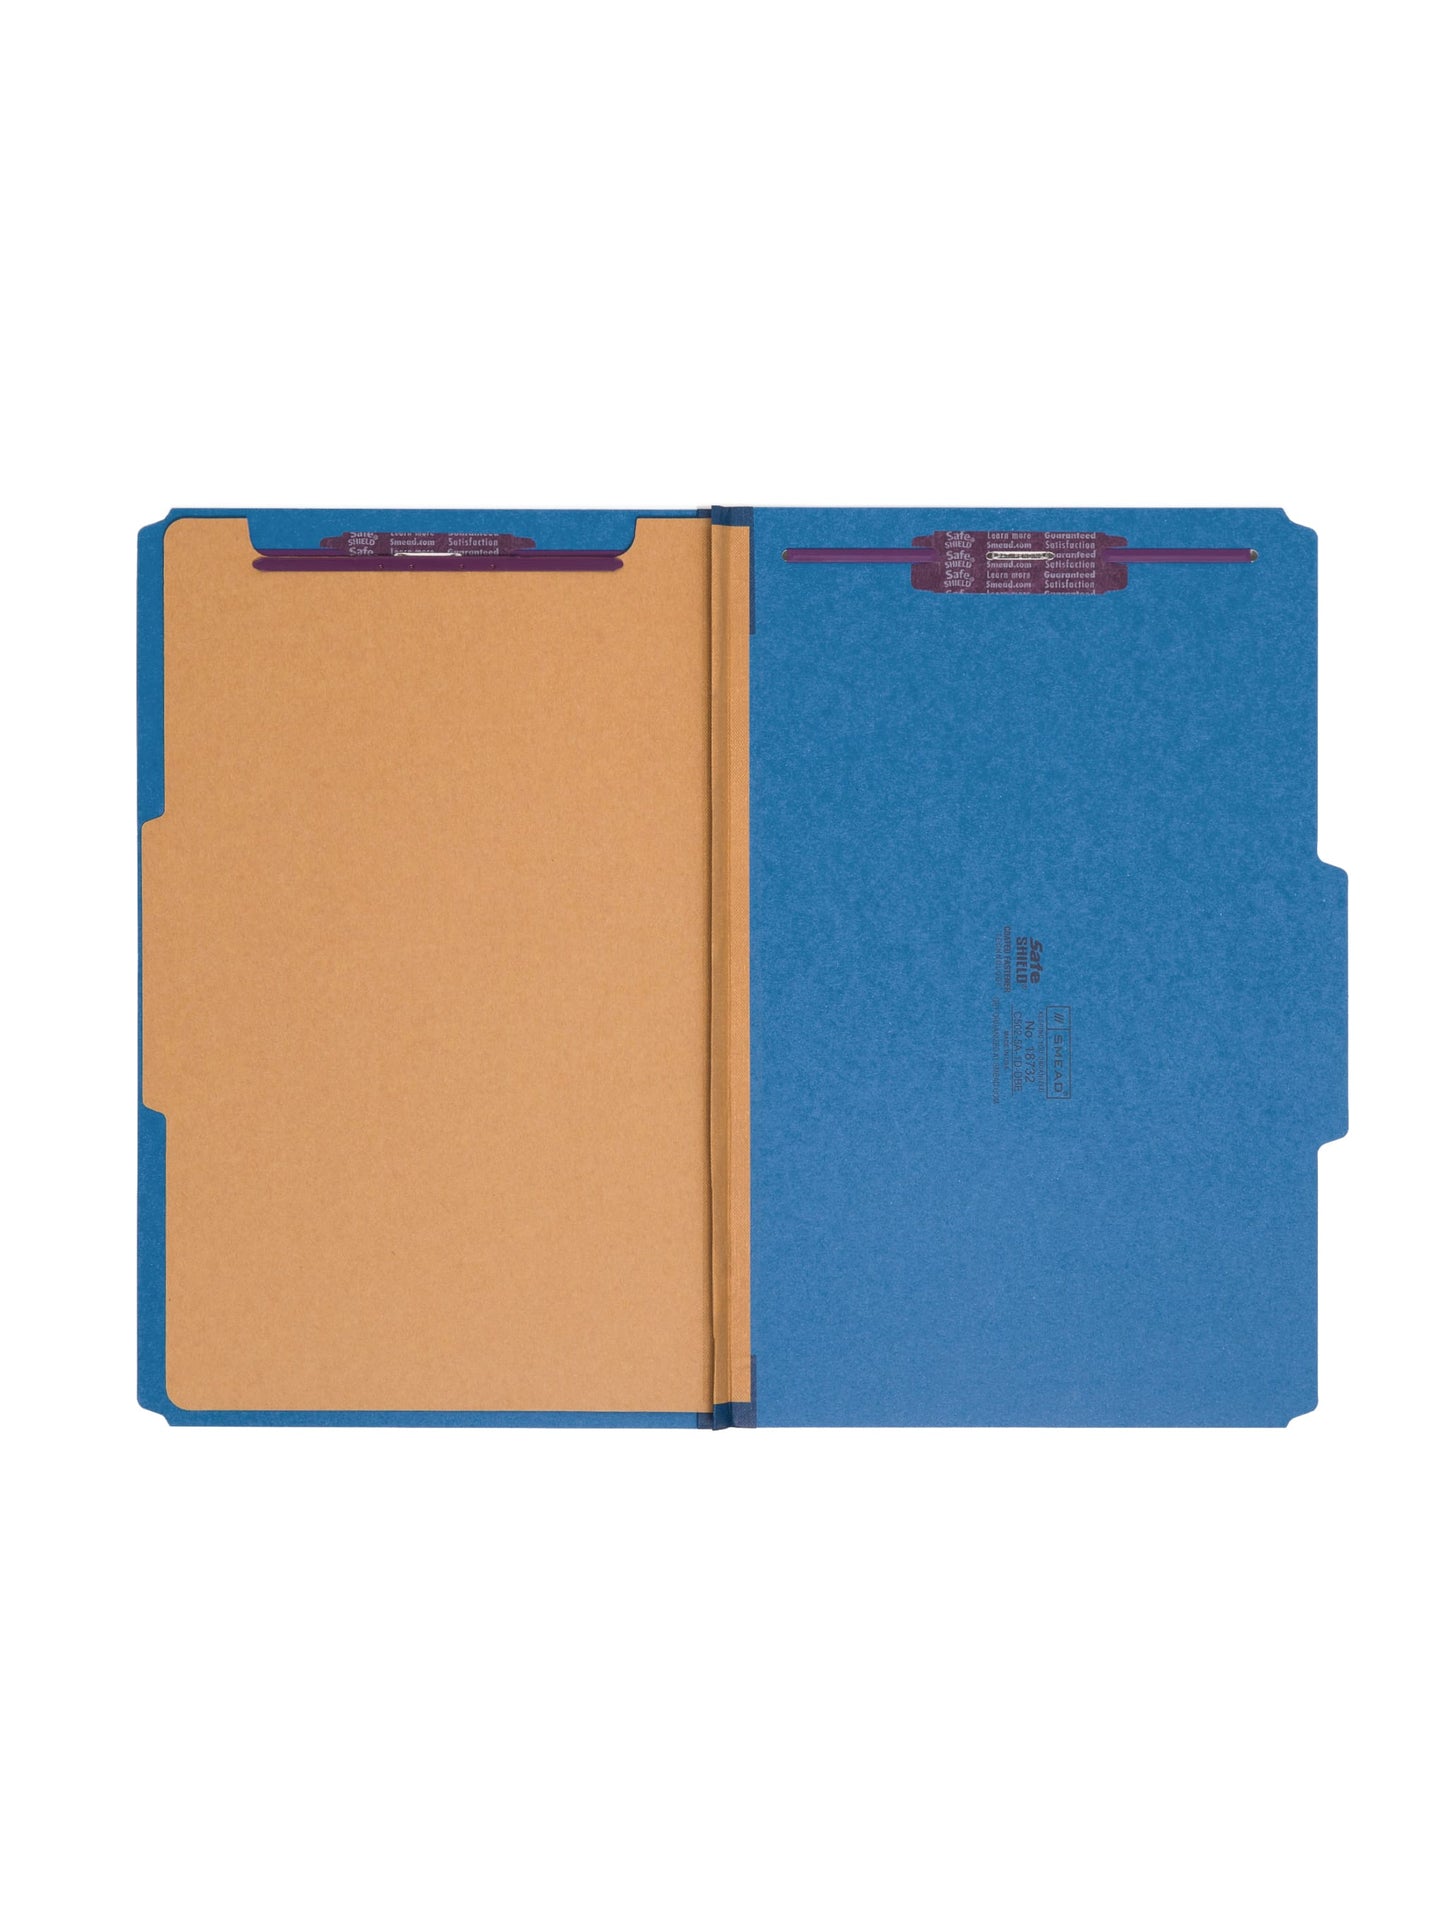 SafeSHIELD® Pressboard Classification File Folders, 1 Divider, 2 inch Expansion, Dark Blue Color, Legal Size, Set of 0, 30086486187320